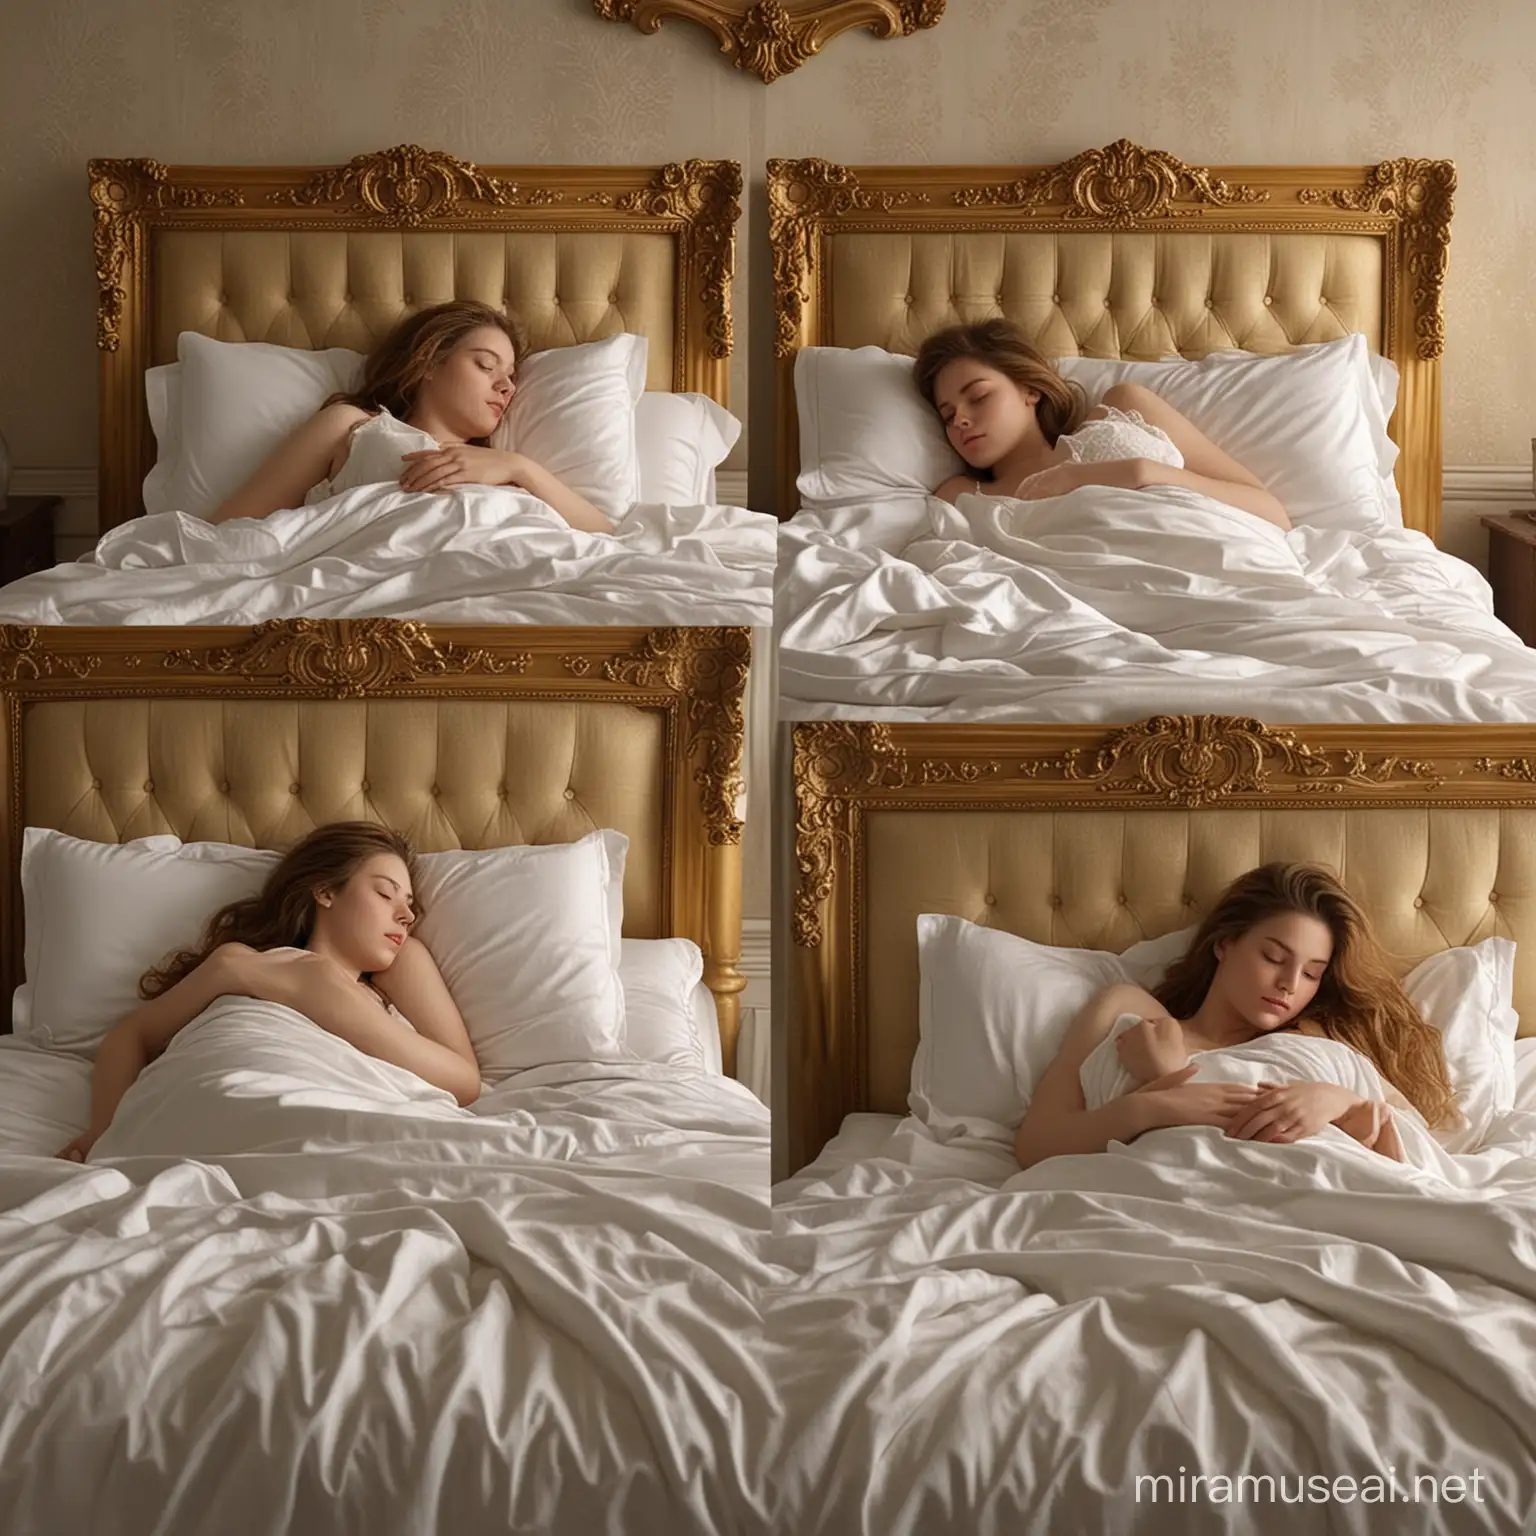 2618. PROMPT:  bagi gambar menjadi lima panel masing-masing dengan bingkai emas, potret gadis tidur di tempat tidur, detail berkualitas tinggi menggambarkan kesempurnaan, realisme dan bentuk kompleks, di bawah gambar adalah gadis asli tidur di tempat tidur, wajah sama dengan gambar, di kamar tidur mewah, HD, 8K .